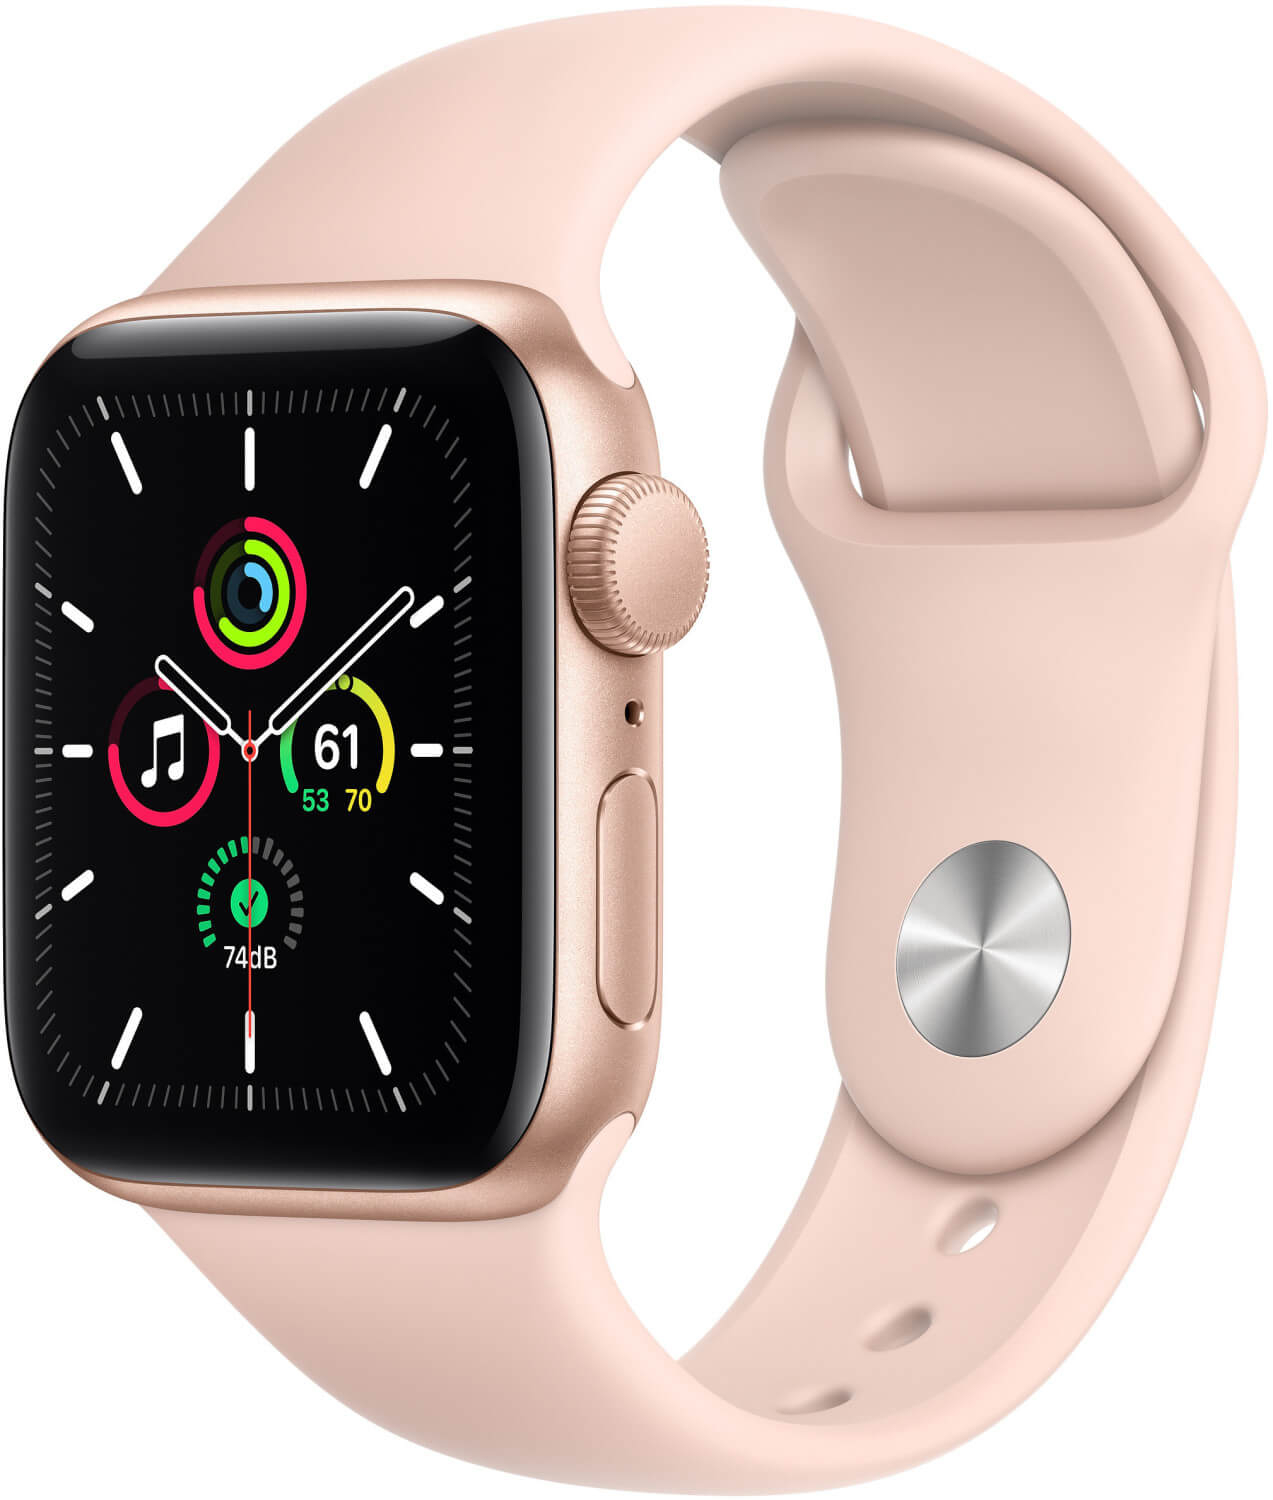 Vooruitgang Ruimteschip Of later Apple Watch Aanbiedingen | Shop smartup.es